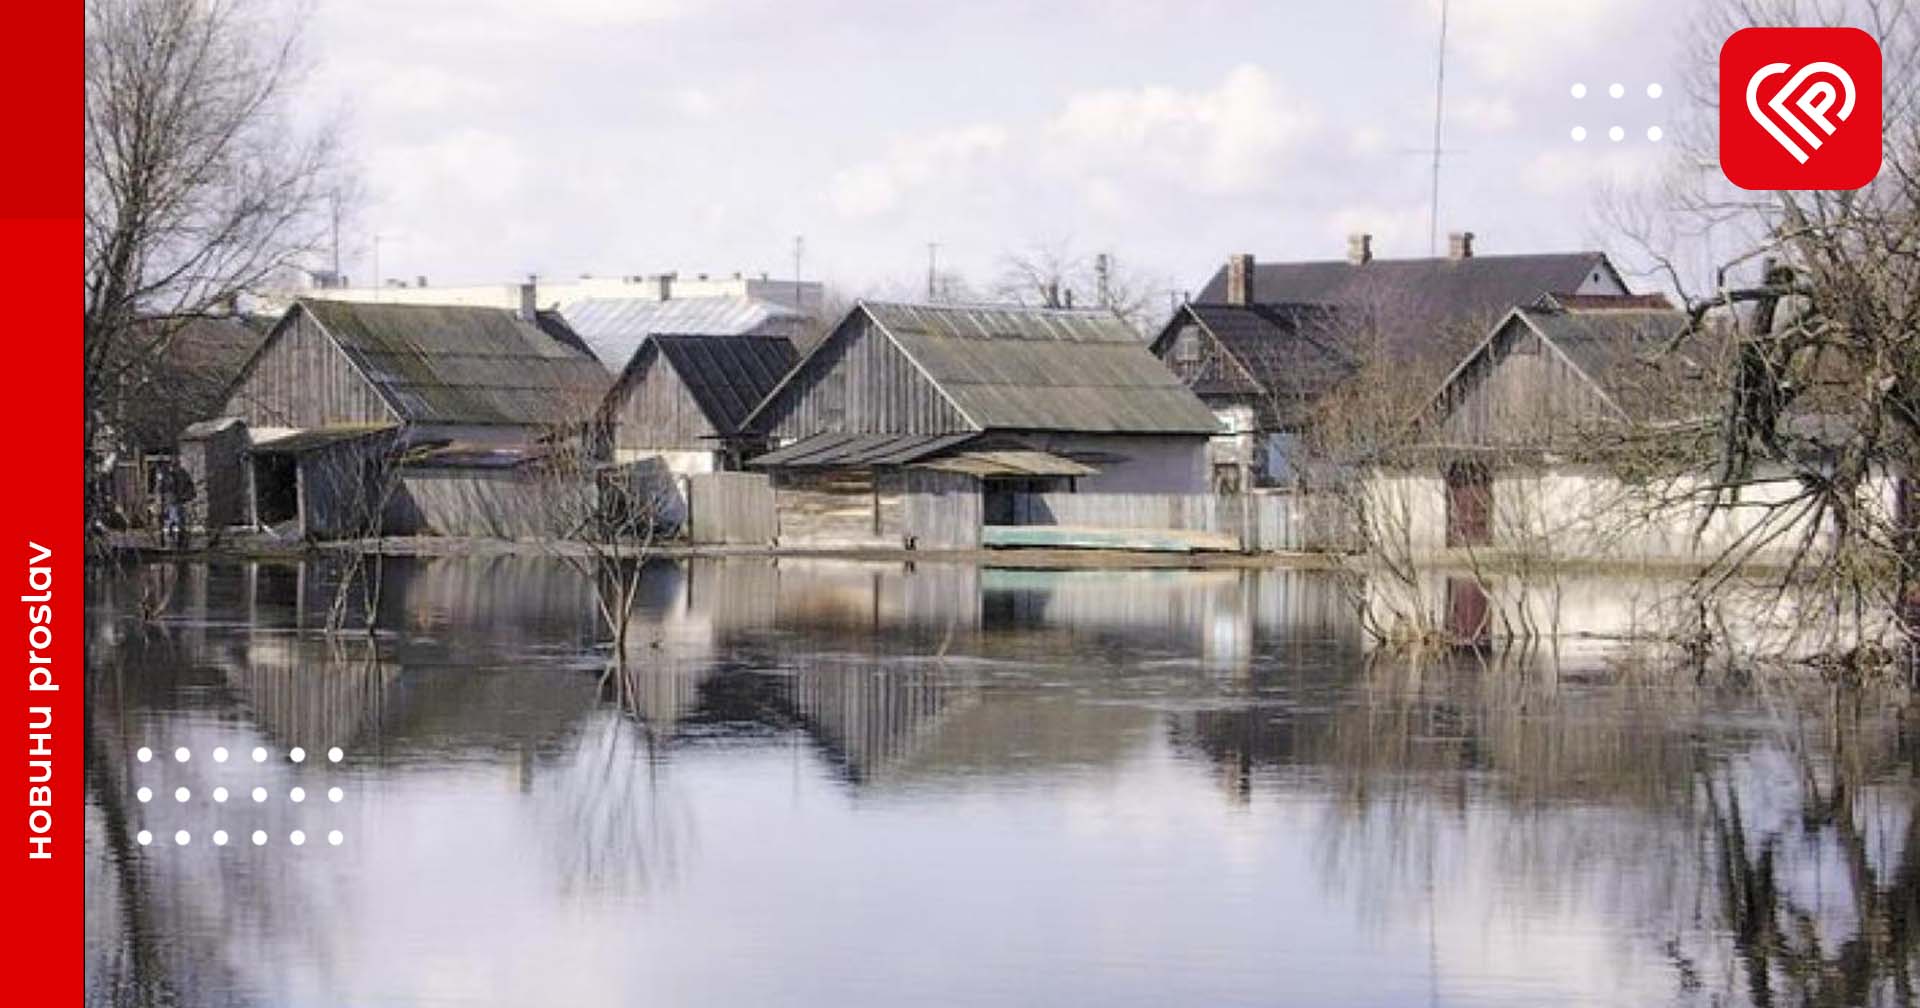 Оголошено ІІ рівень небезпеки: у Бориспільському районі утримуватиметься затоплення заплавних територій